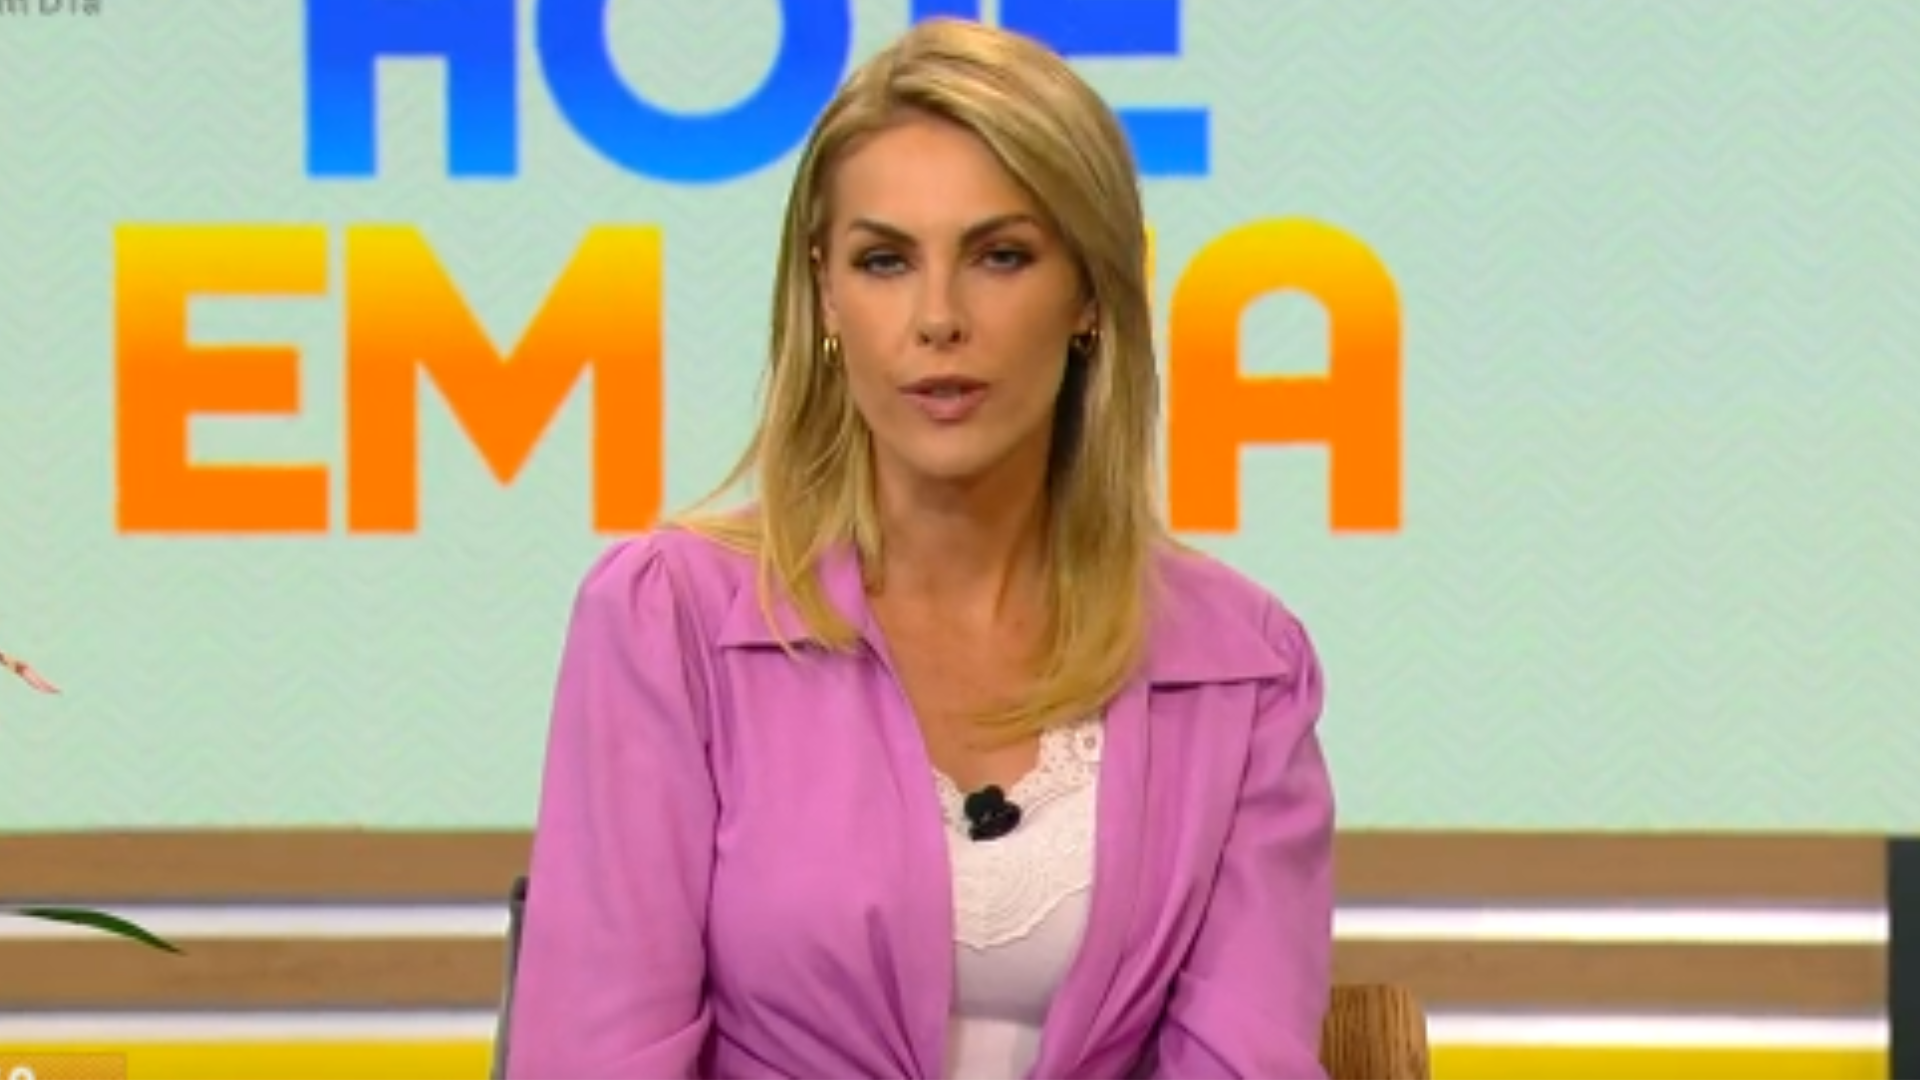 Ana Hickmann fala ao vivo na TV após denúncia contra o marido: “Momento difícil pra mim e para o meu filho”; assista